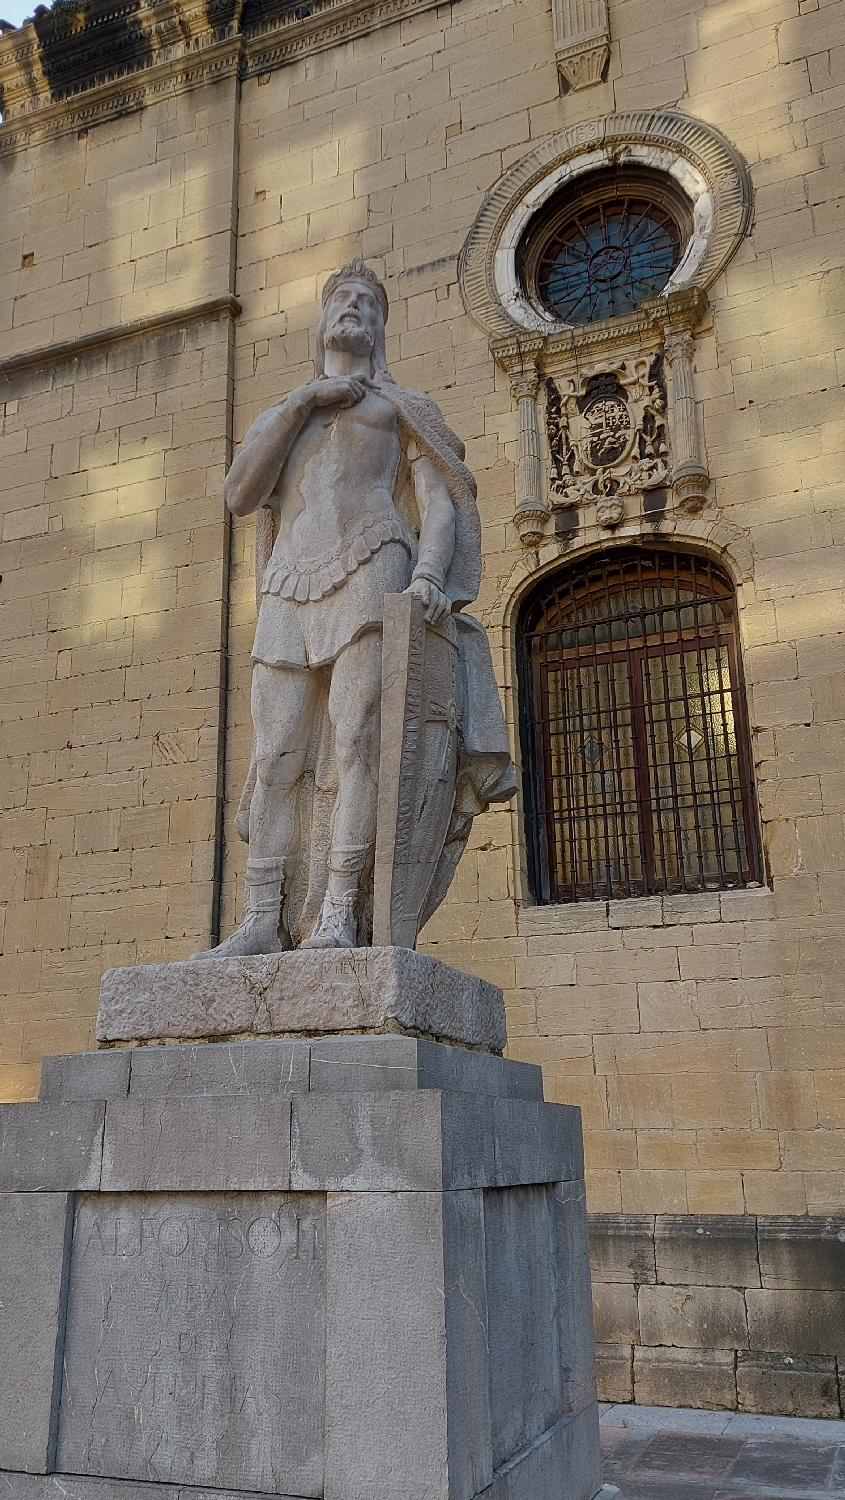 Camino Primitivo, Oviedo, II. Alfonz király szobra a katedrális mellett